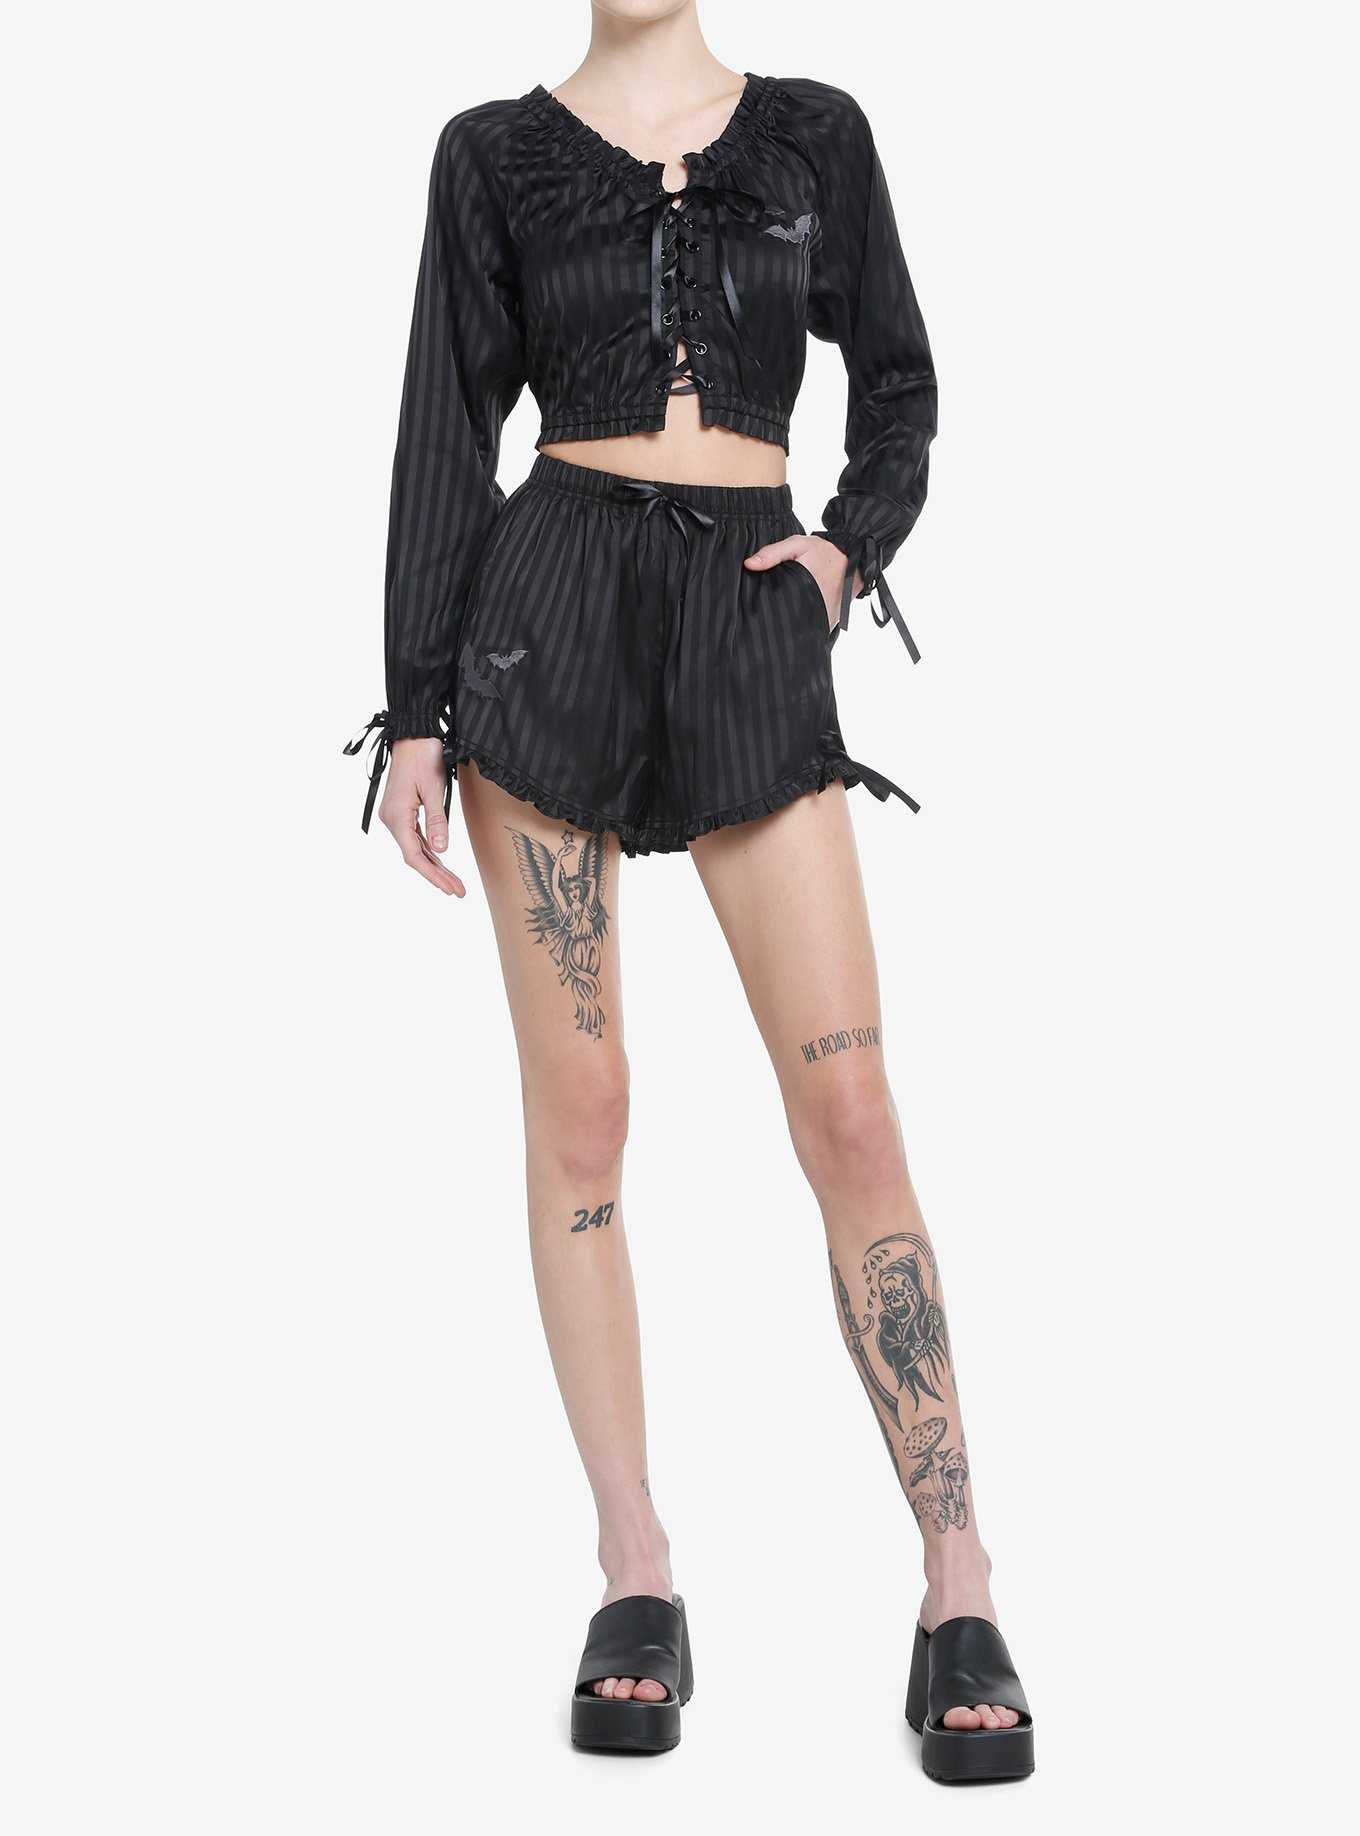 Goth Black Pinstripe Girls Lounge Shorts, , hi-res